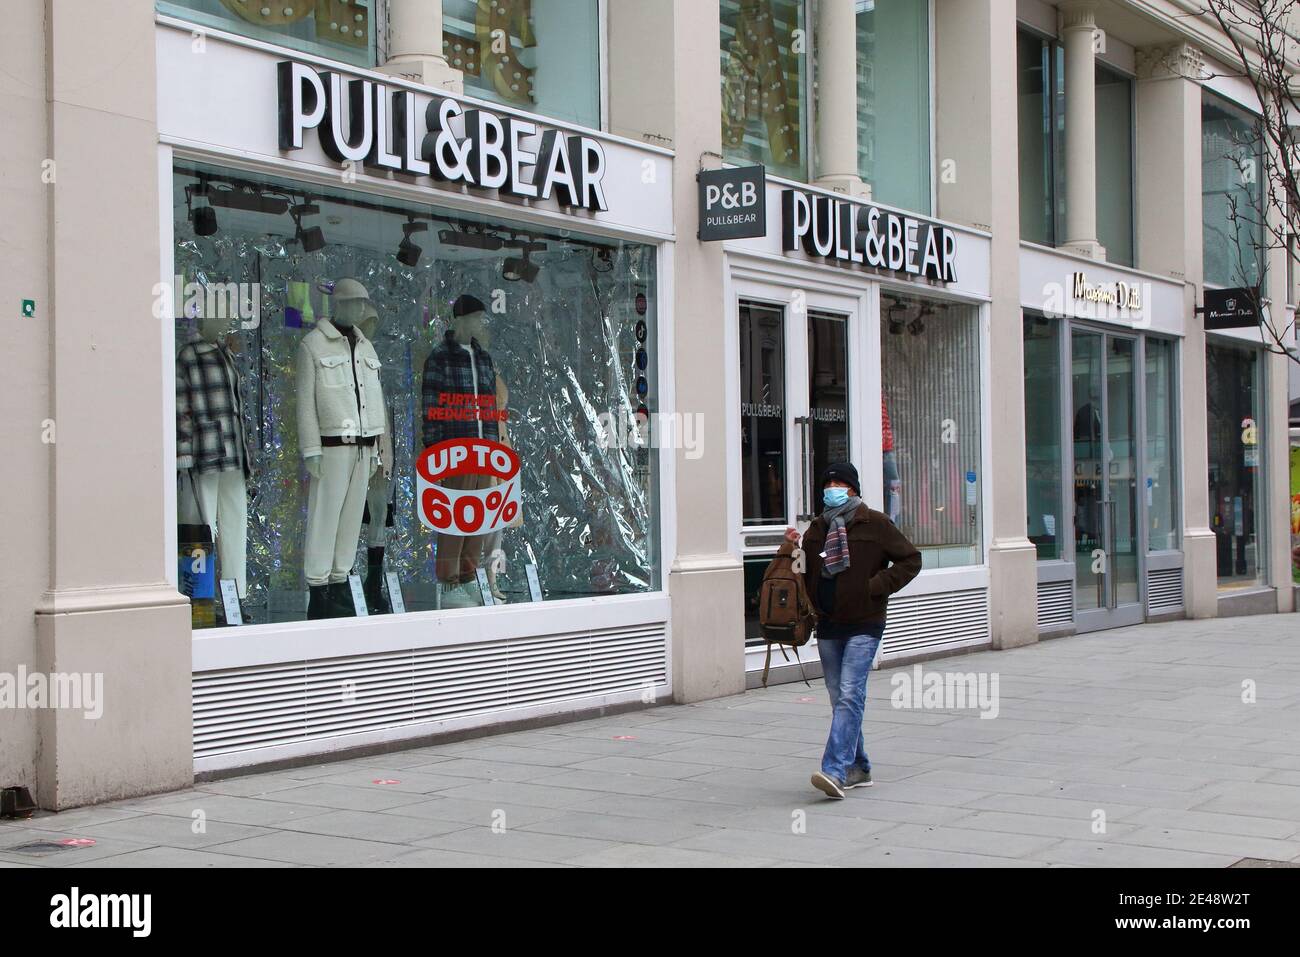 Pull bear store uk Banque de photographies et d'images à haute résolution -  Alamy